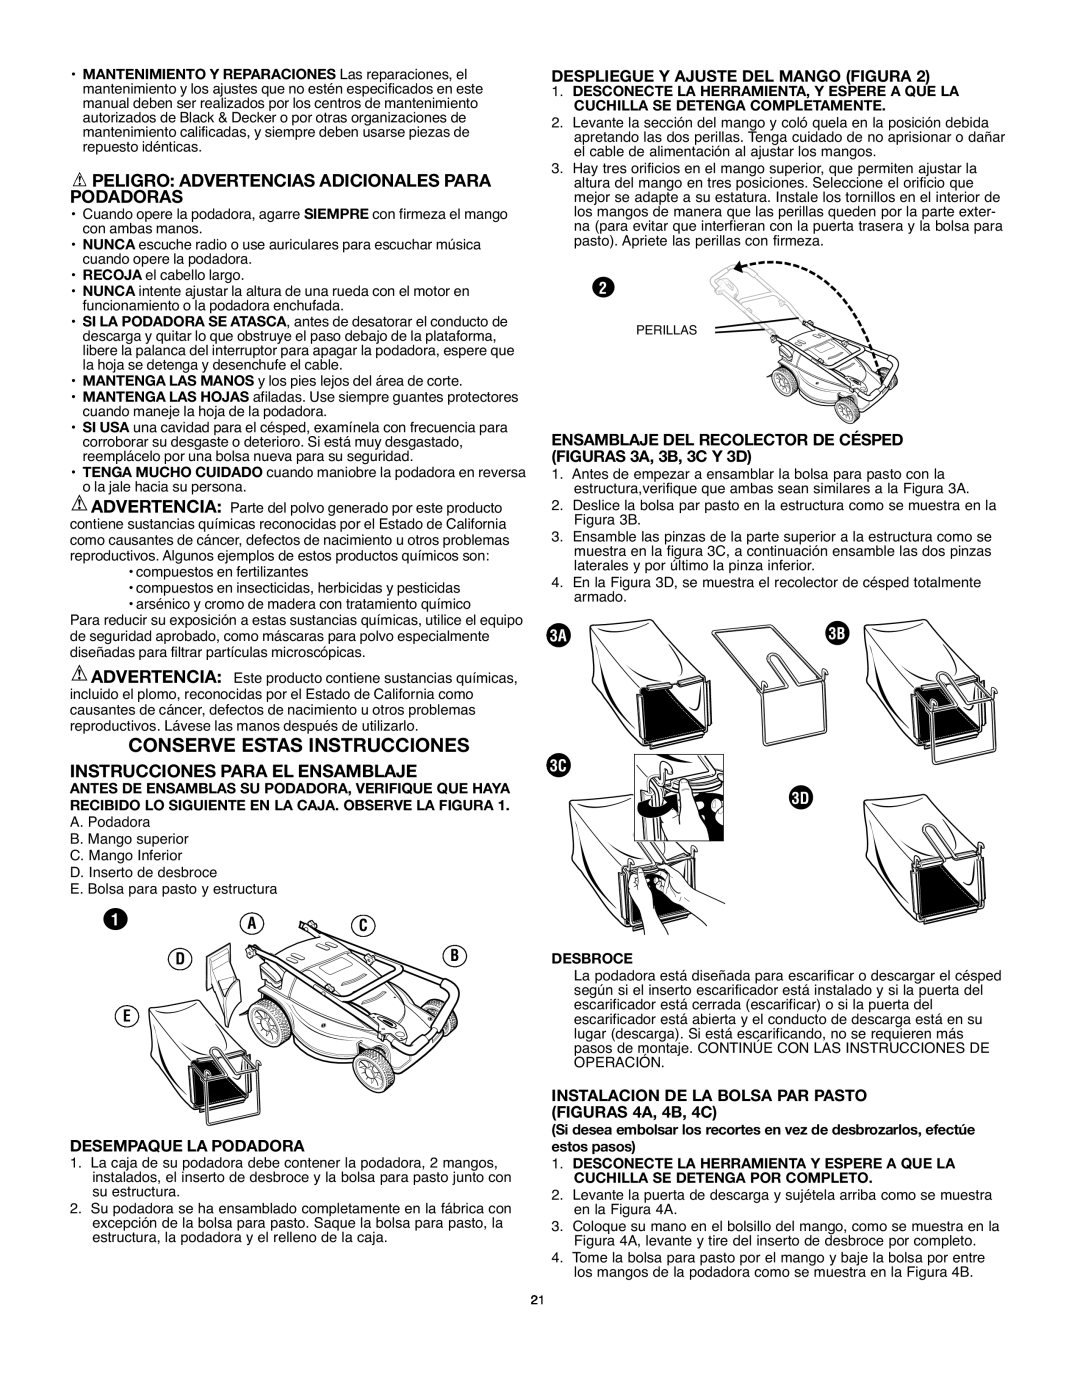 Black & Decker MM875 Conserve Estas Instrucciones, Peligro Advertencias Adicionales Para Podadoras, Desempaque La Podadora 